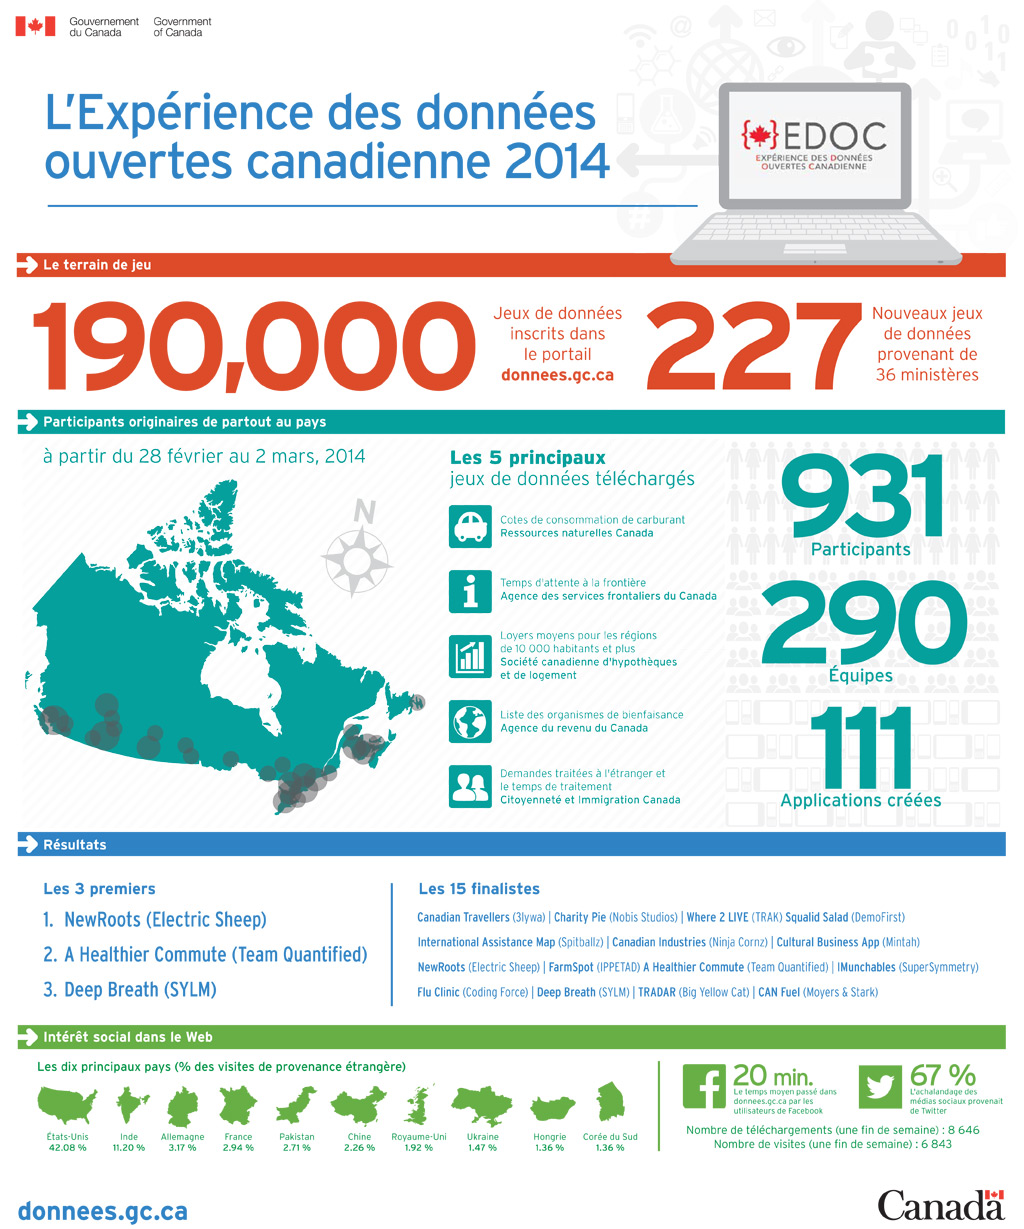 Cette infographie présente les faits saillants de l’appathon Expérience des 

données ouvertes canadienne qui a eu lieu du 28 février au 2 mars 2014.